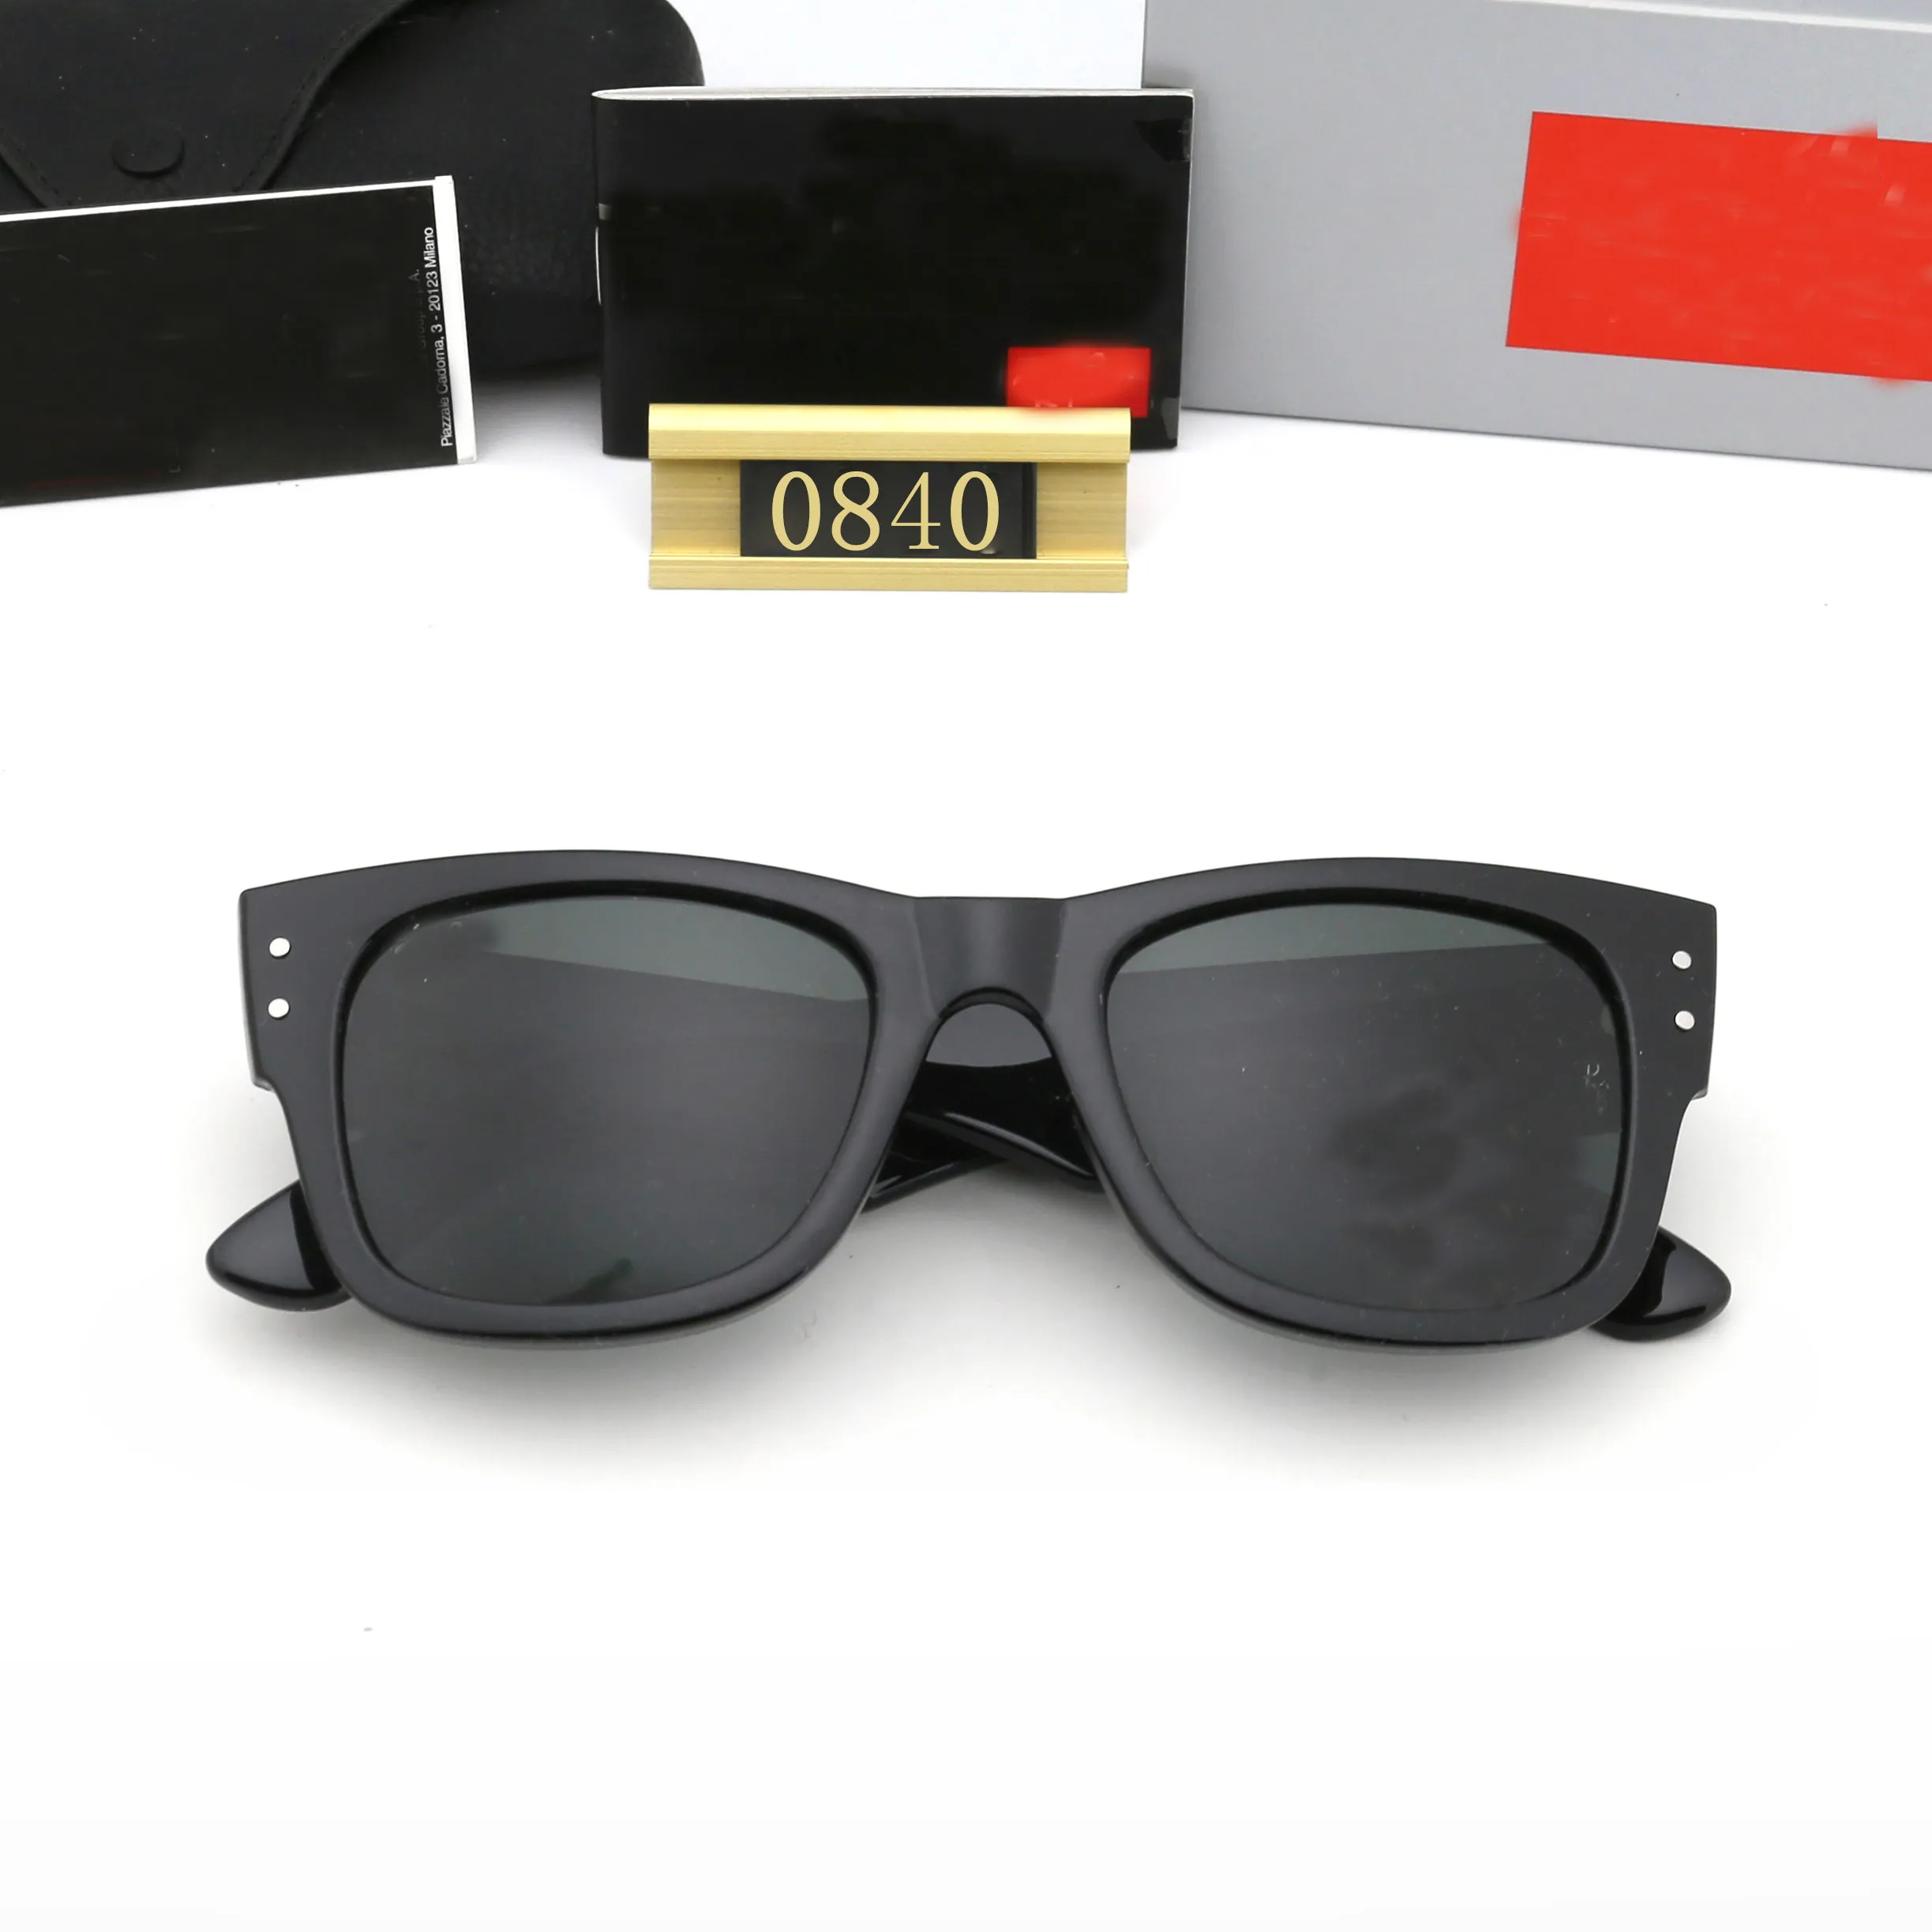 Мужские солнцезащитные очки мужчины мода на открытое открытое классическое стиль очки Unisex Goggles Polarizing Sport вождение множественные оттенки стиля